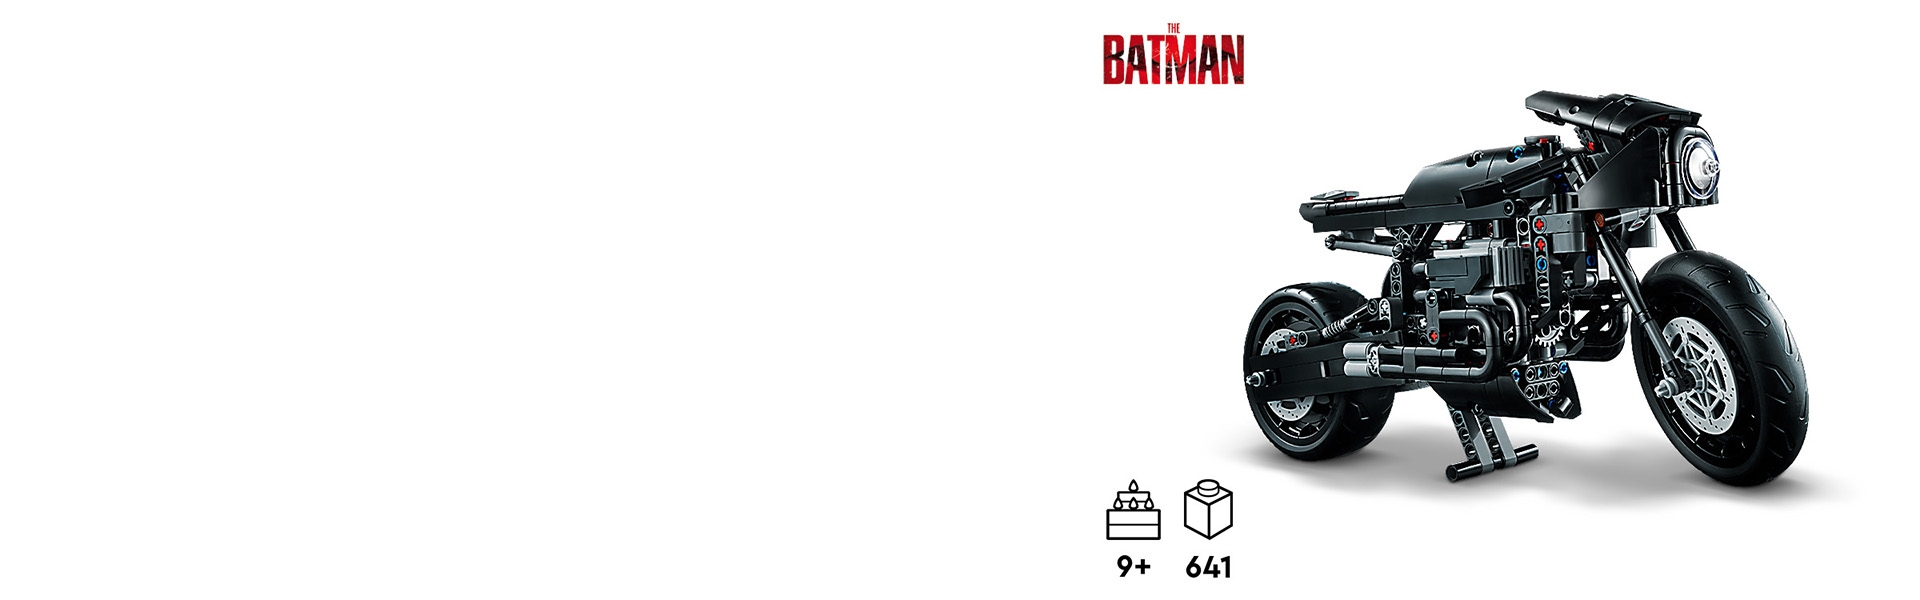 バットマン バットサイクル™ 42155 | レゴ バットマン™ |レゴ®ストア